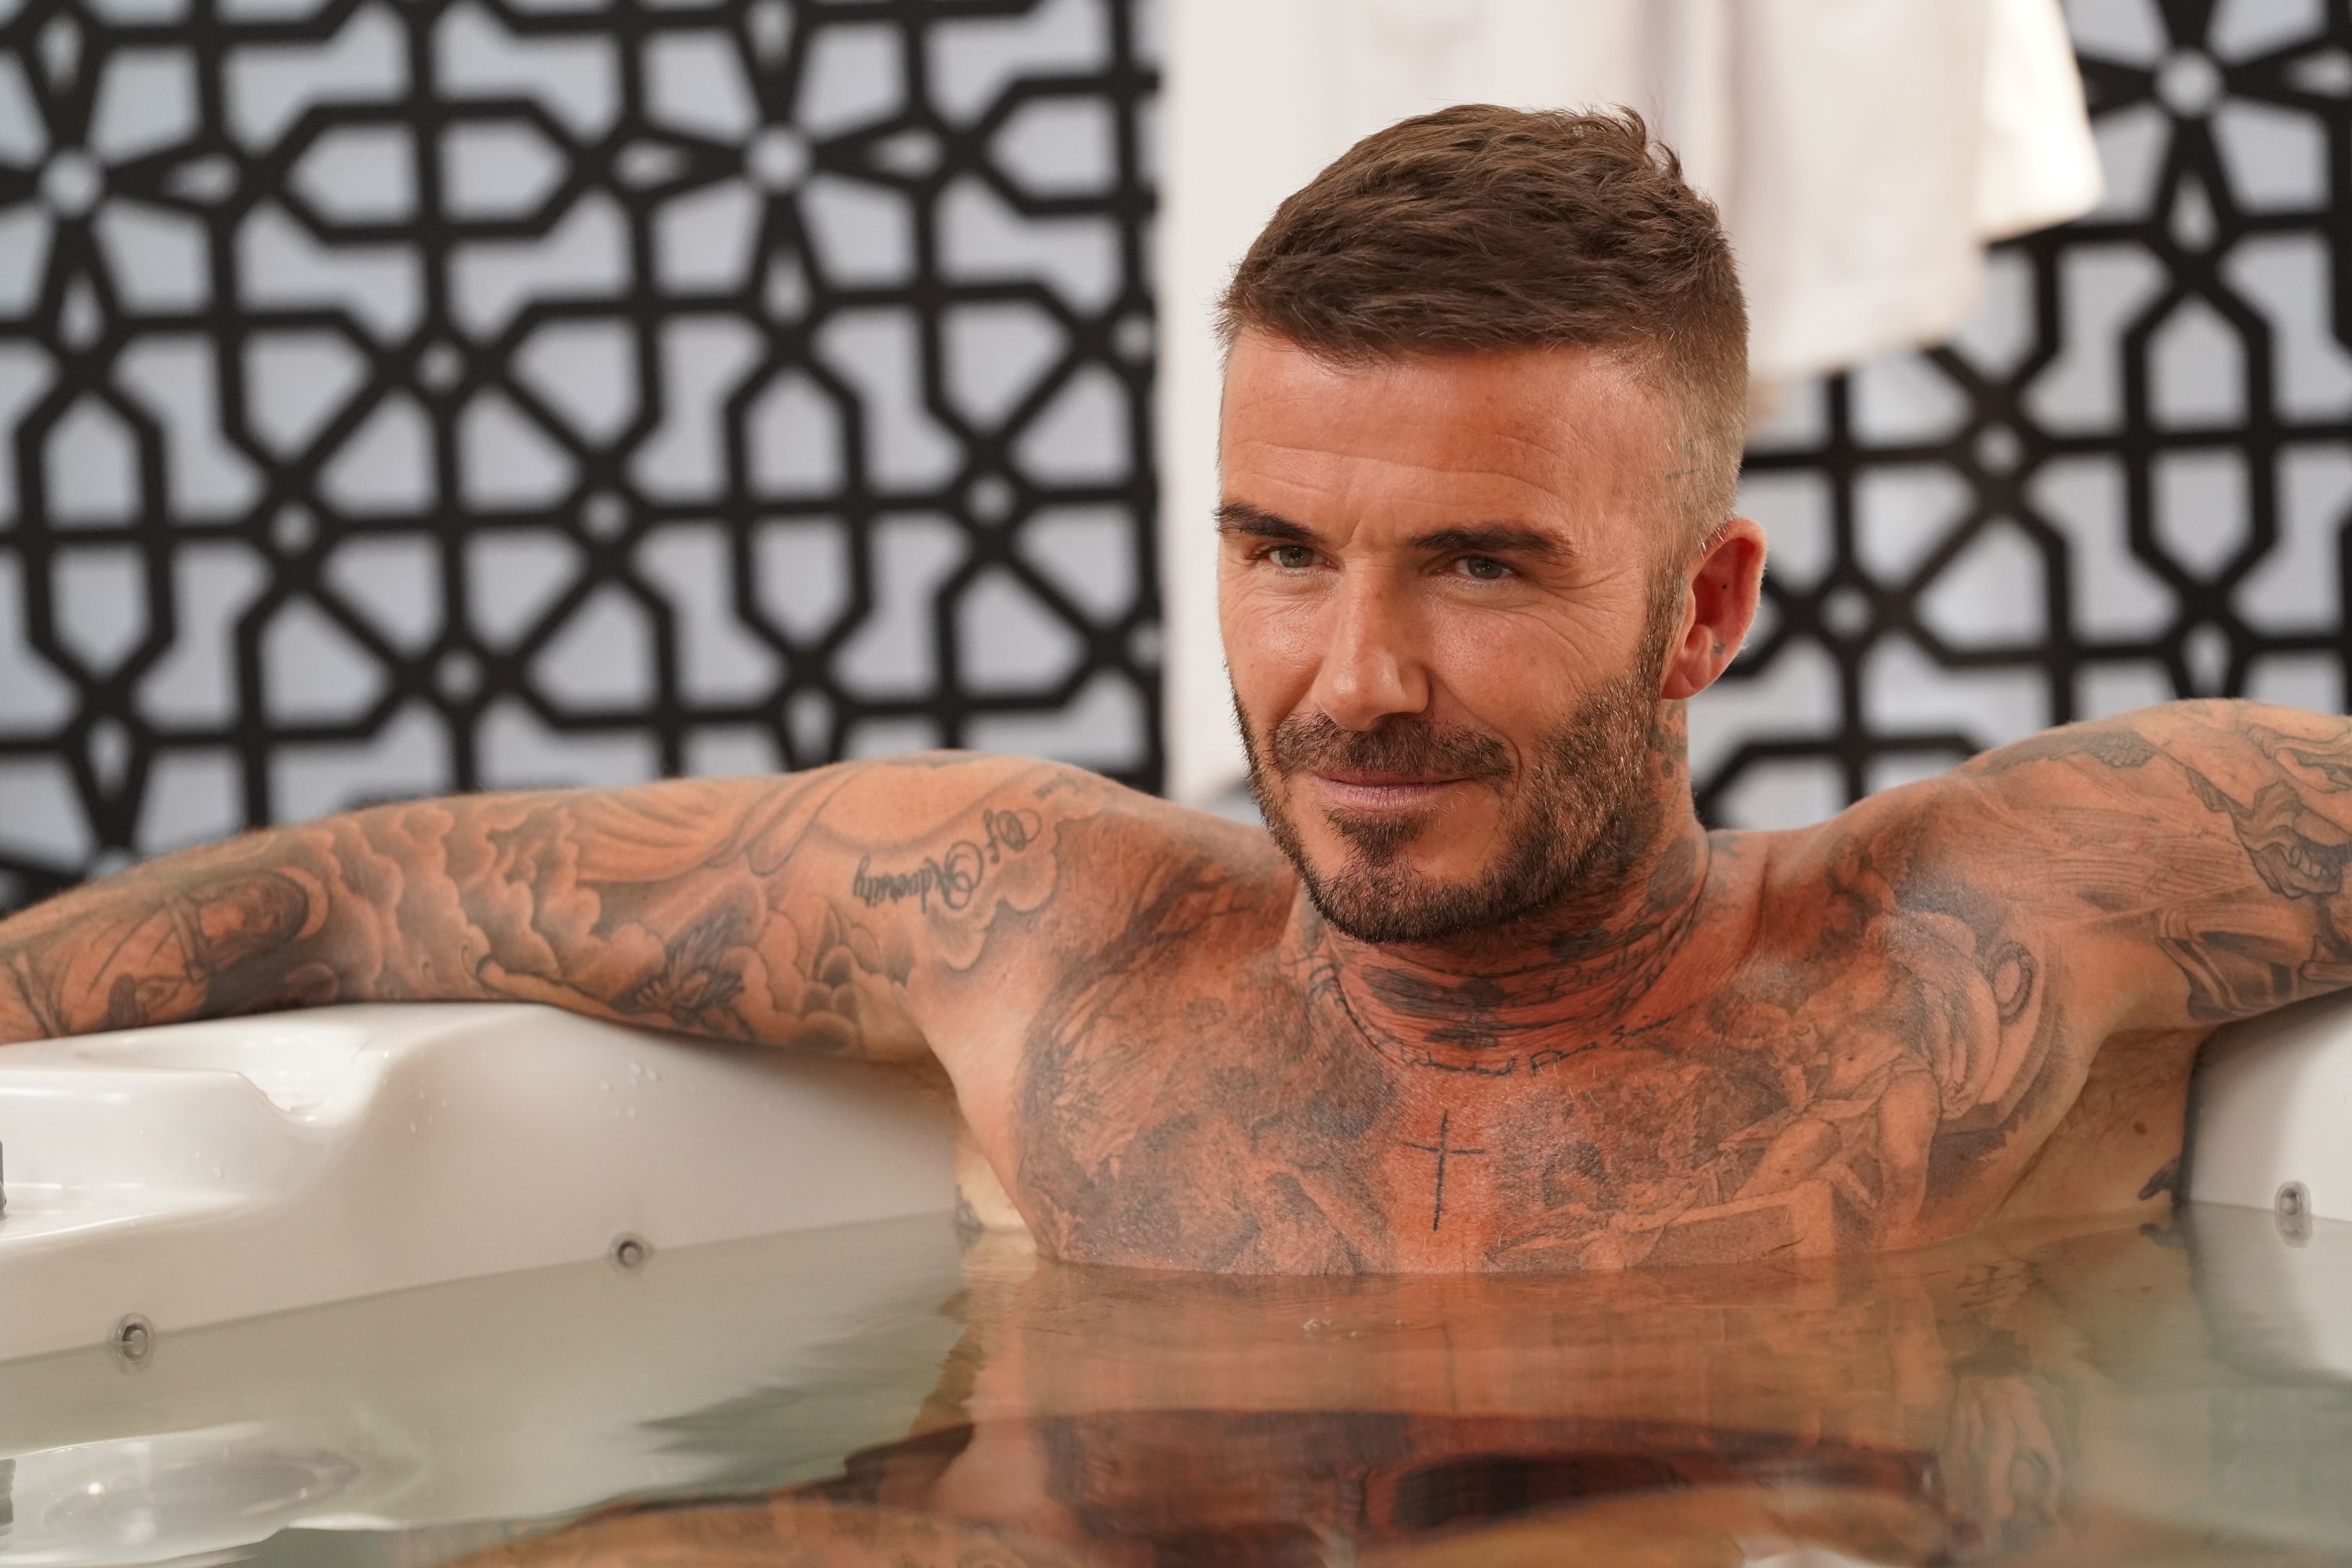 Xăm Việt Tattoo   David Beckham  Siêu cầu thủ với đam mê hình xăm David  Beckham được biết đến là một tượng đài săm sống Mỗi hình săm đều mang